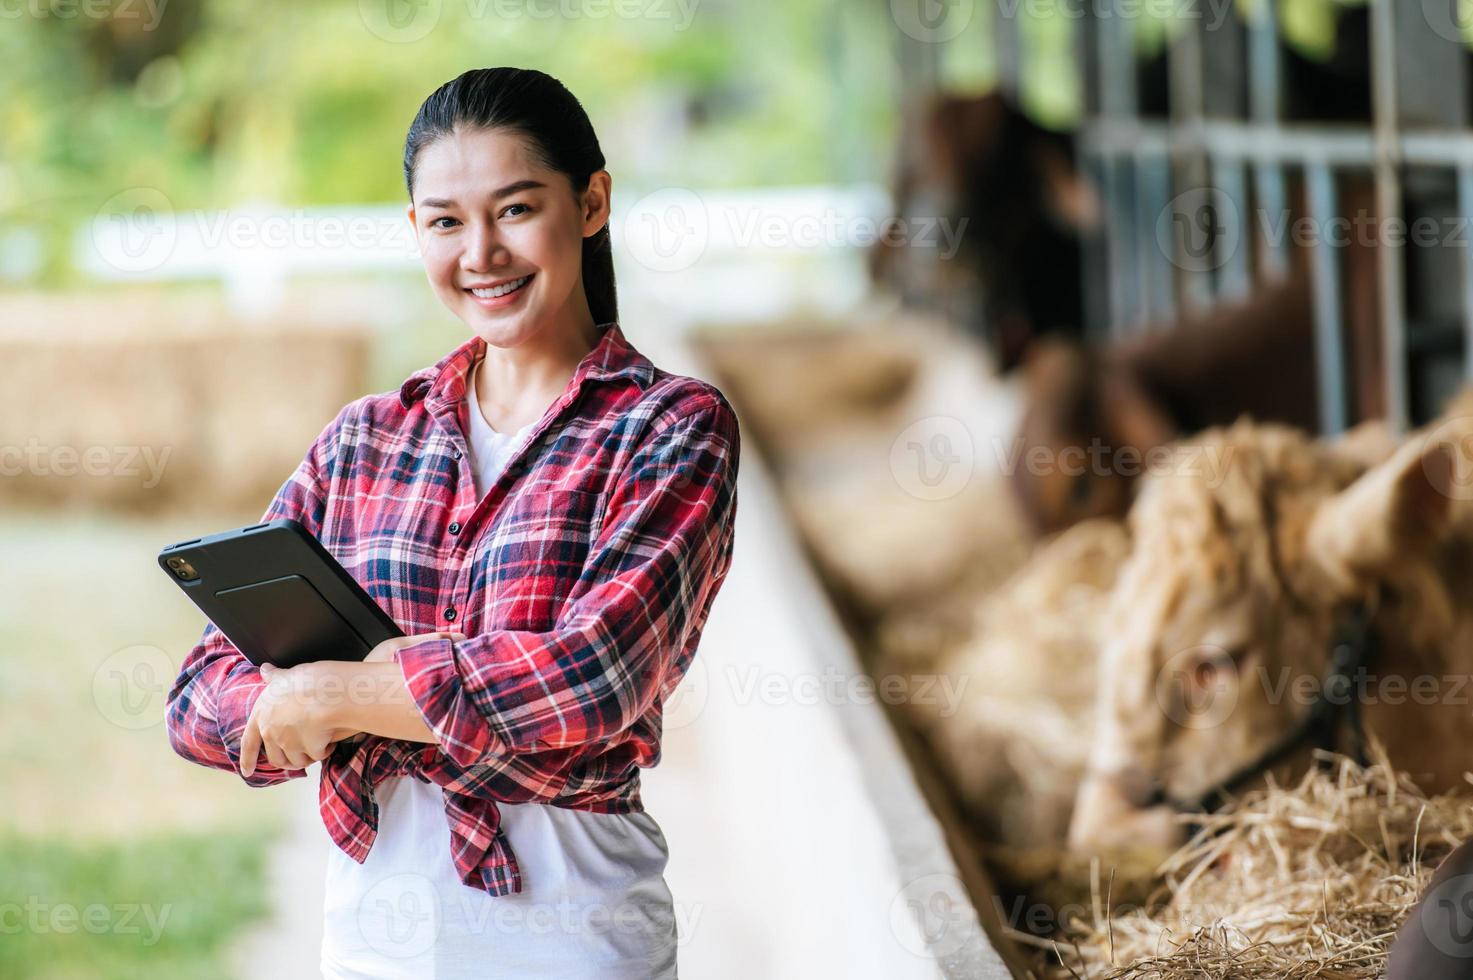 retrato de una joven granjera asiática feliz cruzando el brazo y mirando la cámara en la granja de vacas lecheras. concepto de industria agrícola, agricultura, personas, tecnología y cría de animales. foto